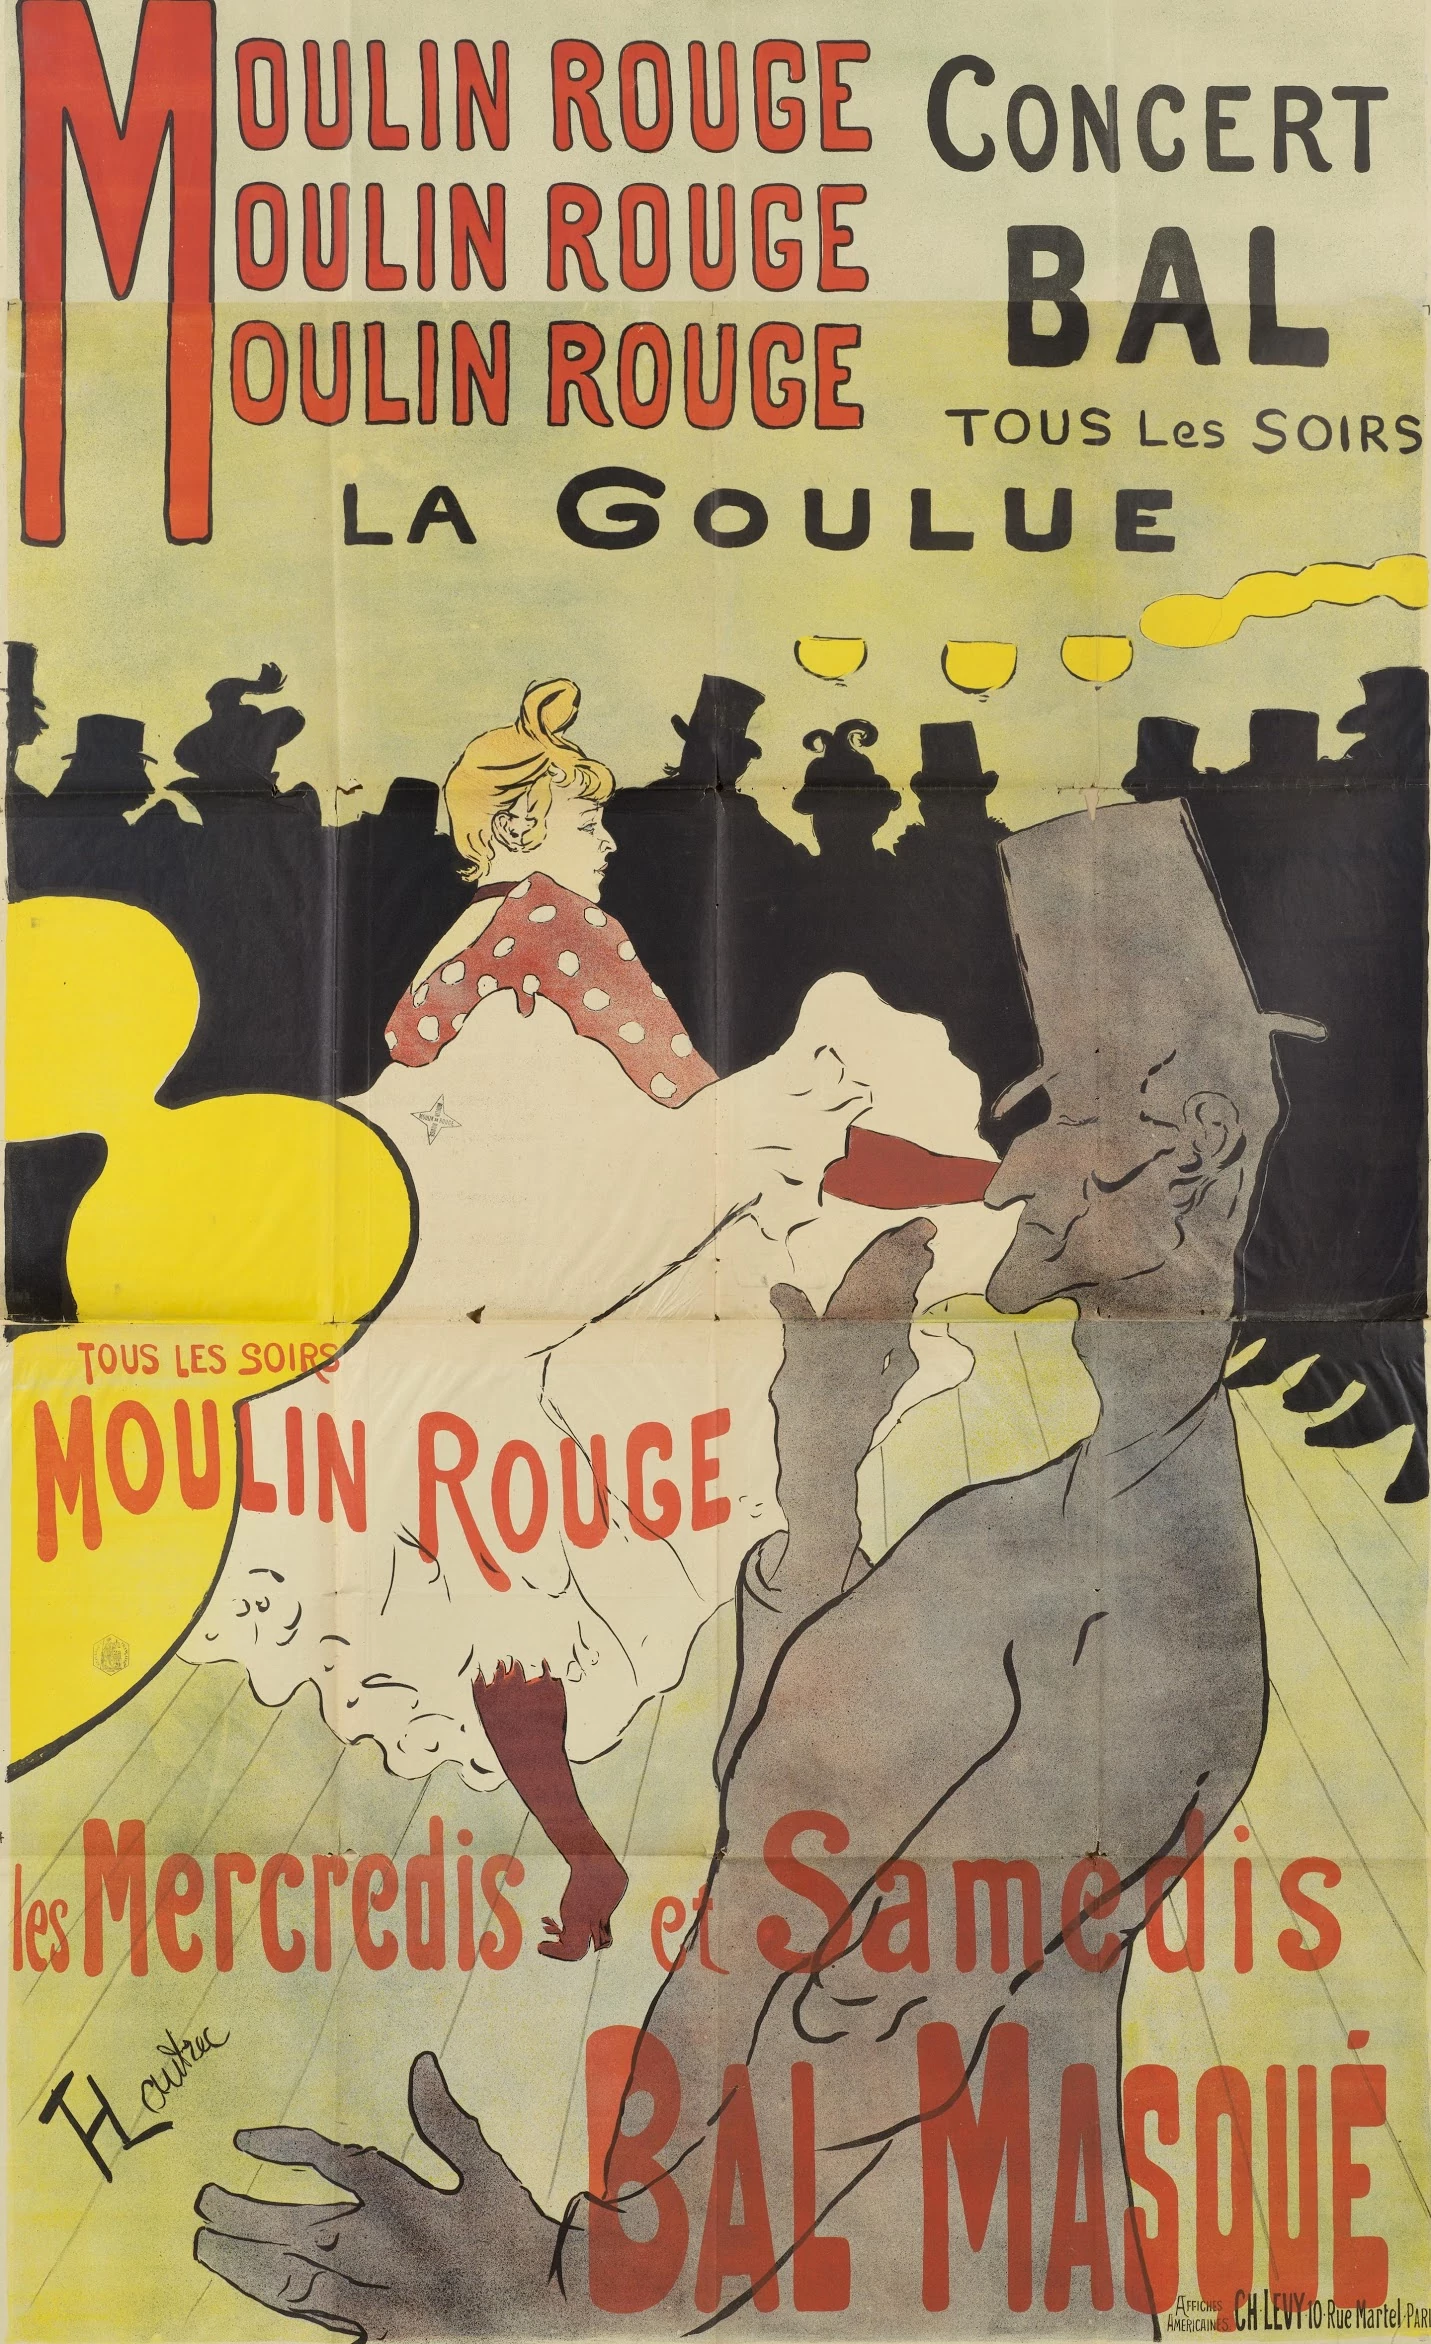 Moulin Rouge, La Goulue, Henri de Toulouse-Lautrec